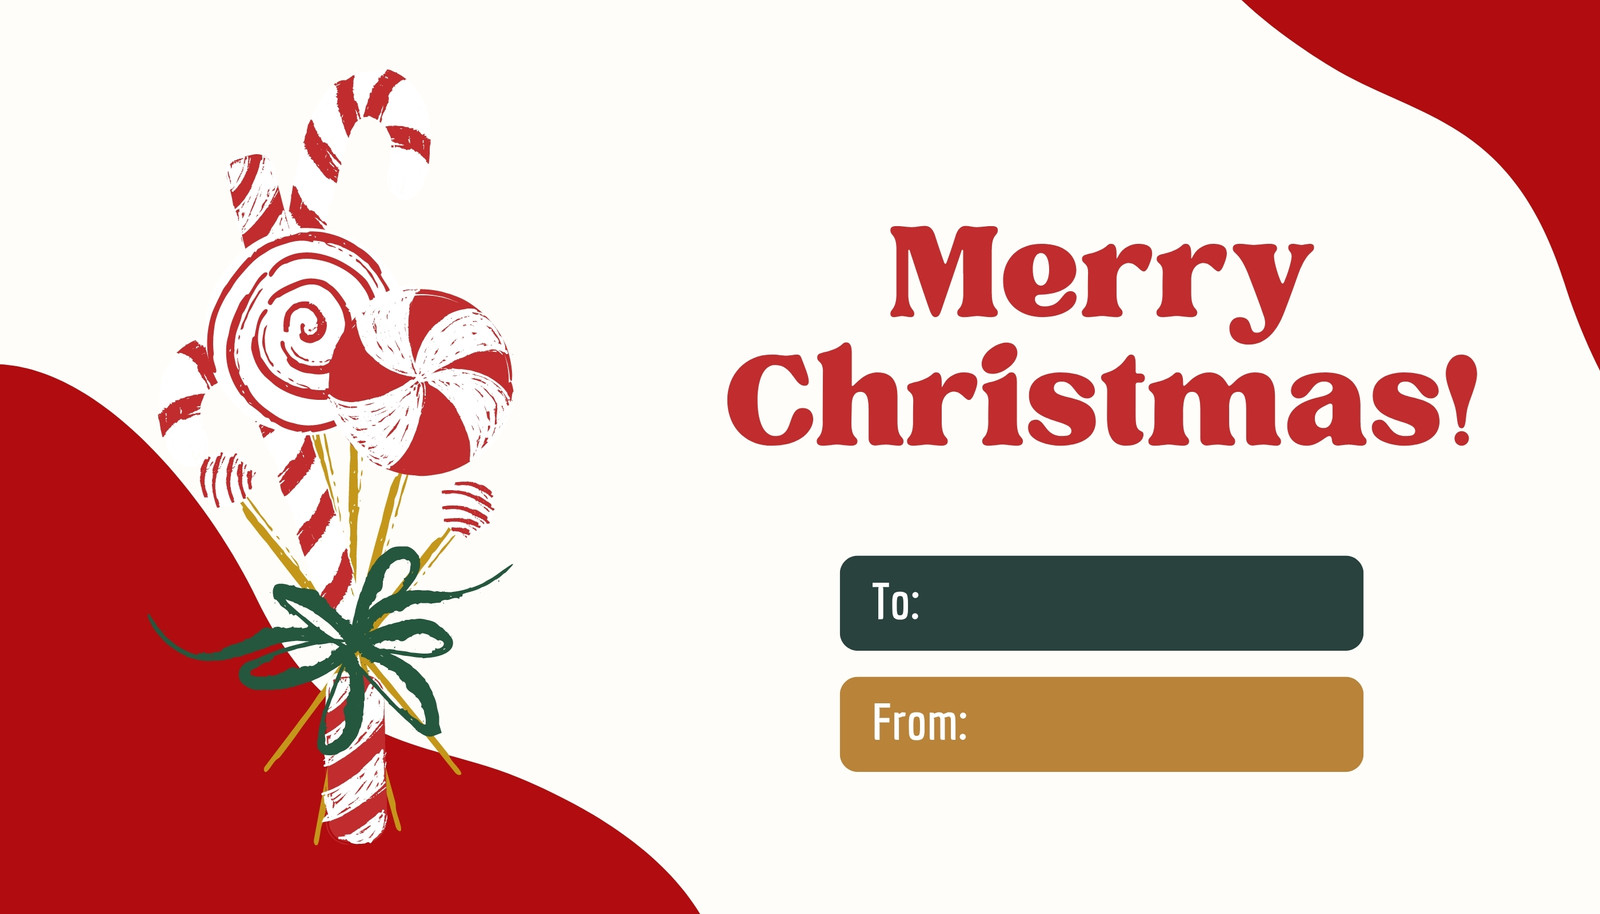 Free custom printable Christmas tag templates